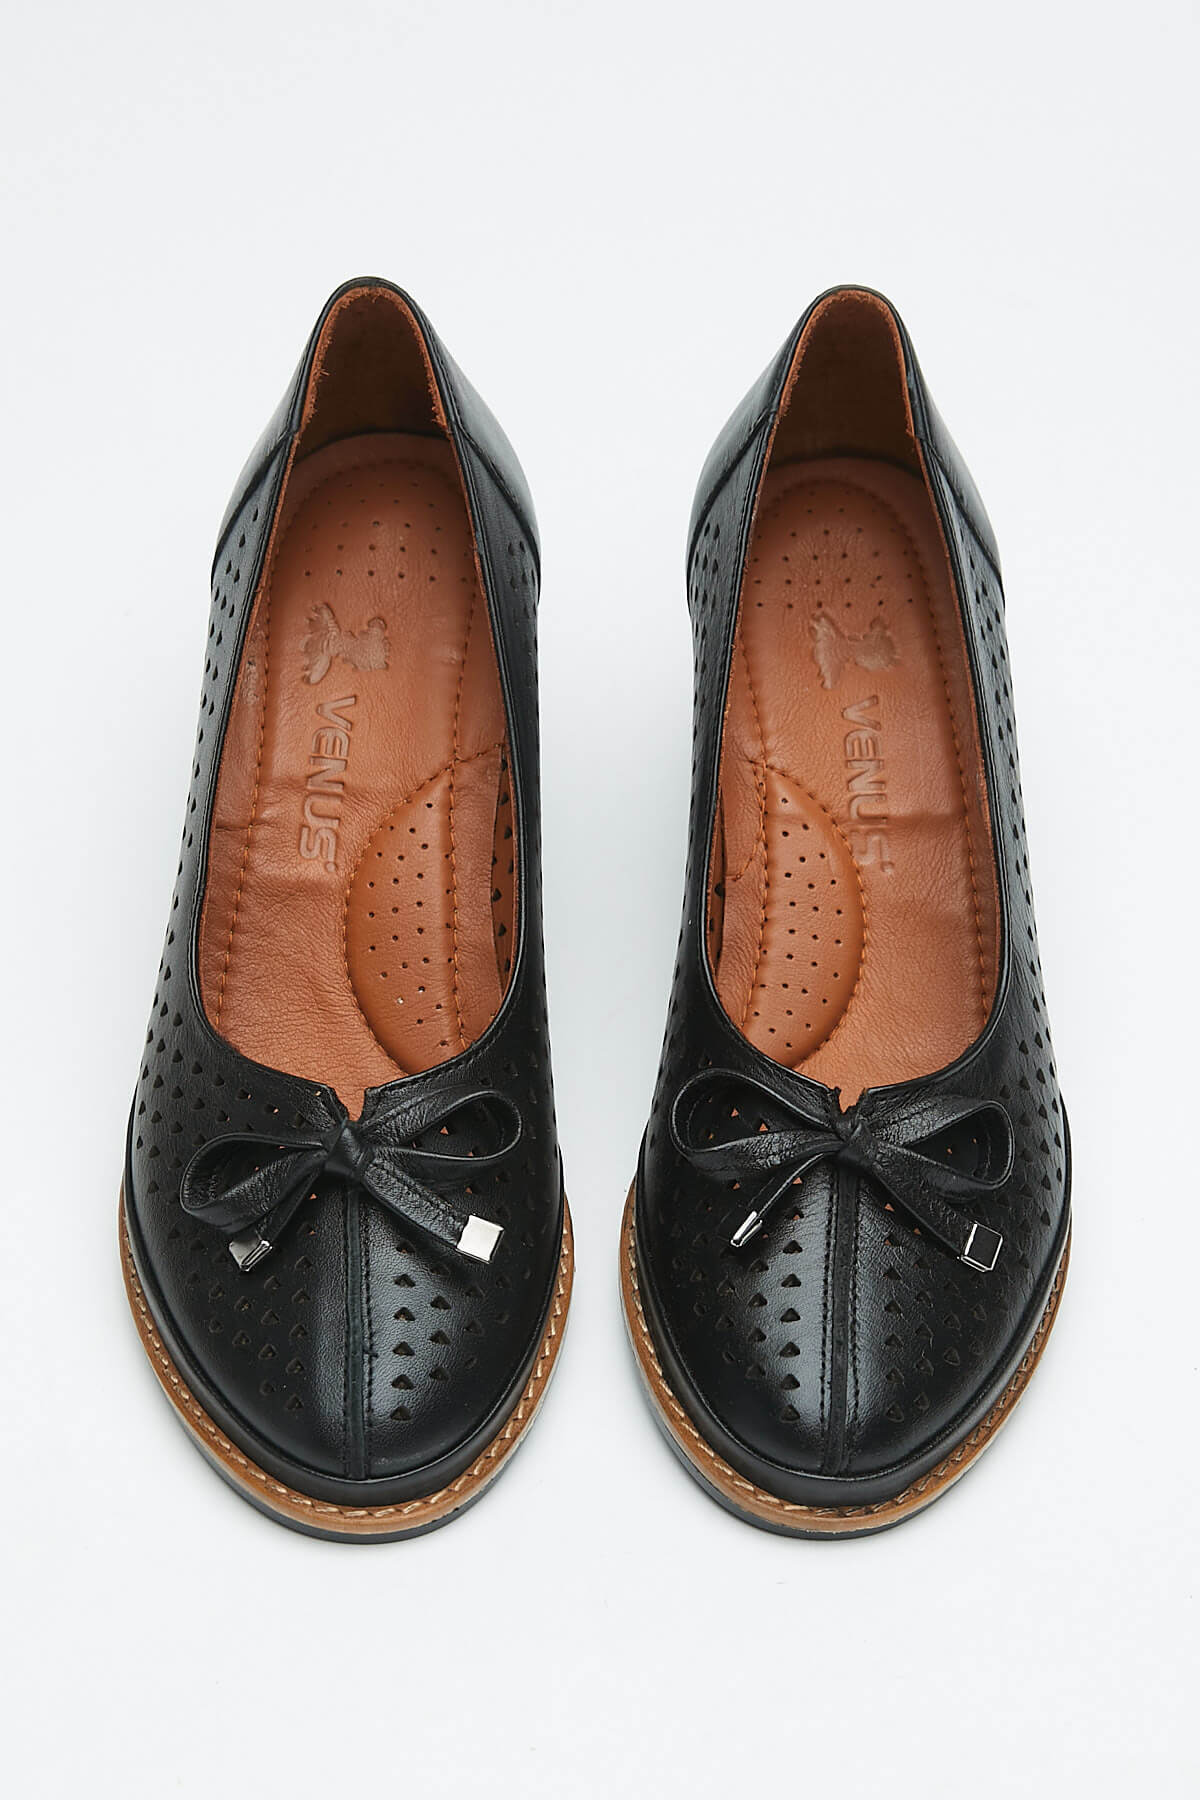 Kadın Topuklu Deri Ayakkabı Siyah 2113301Y - Thumbnail